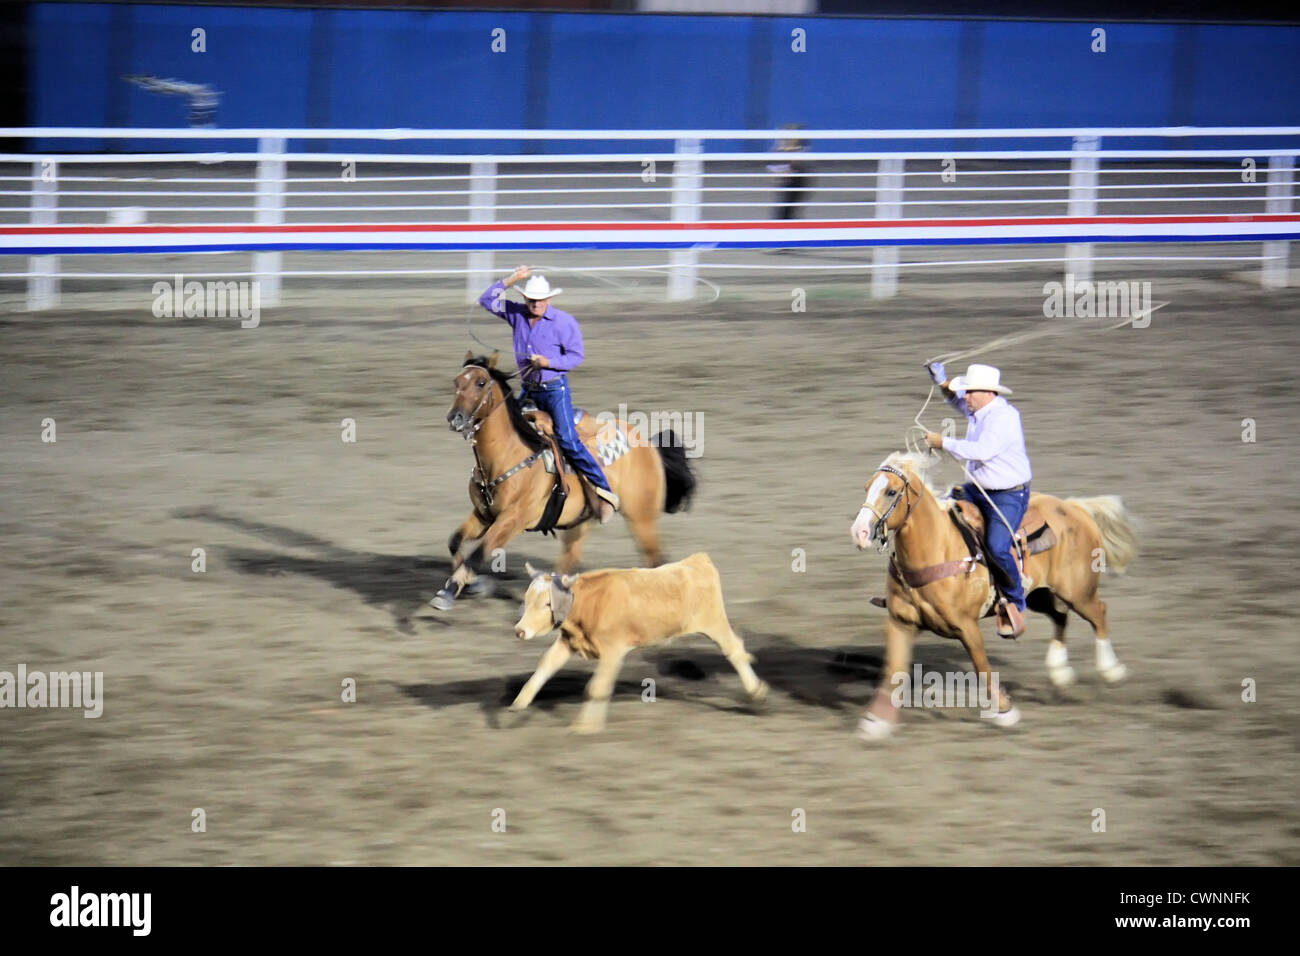 Team roping, Cody Nite rodeo, Cody, Wyoming, USA Stock Photo